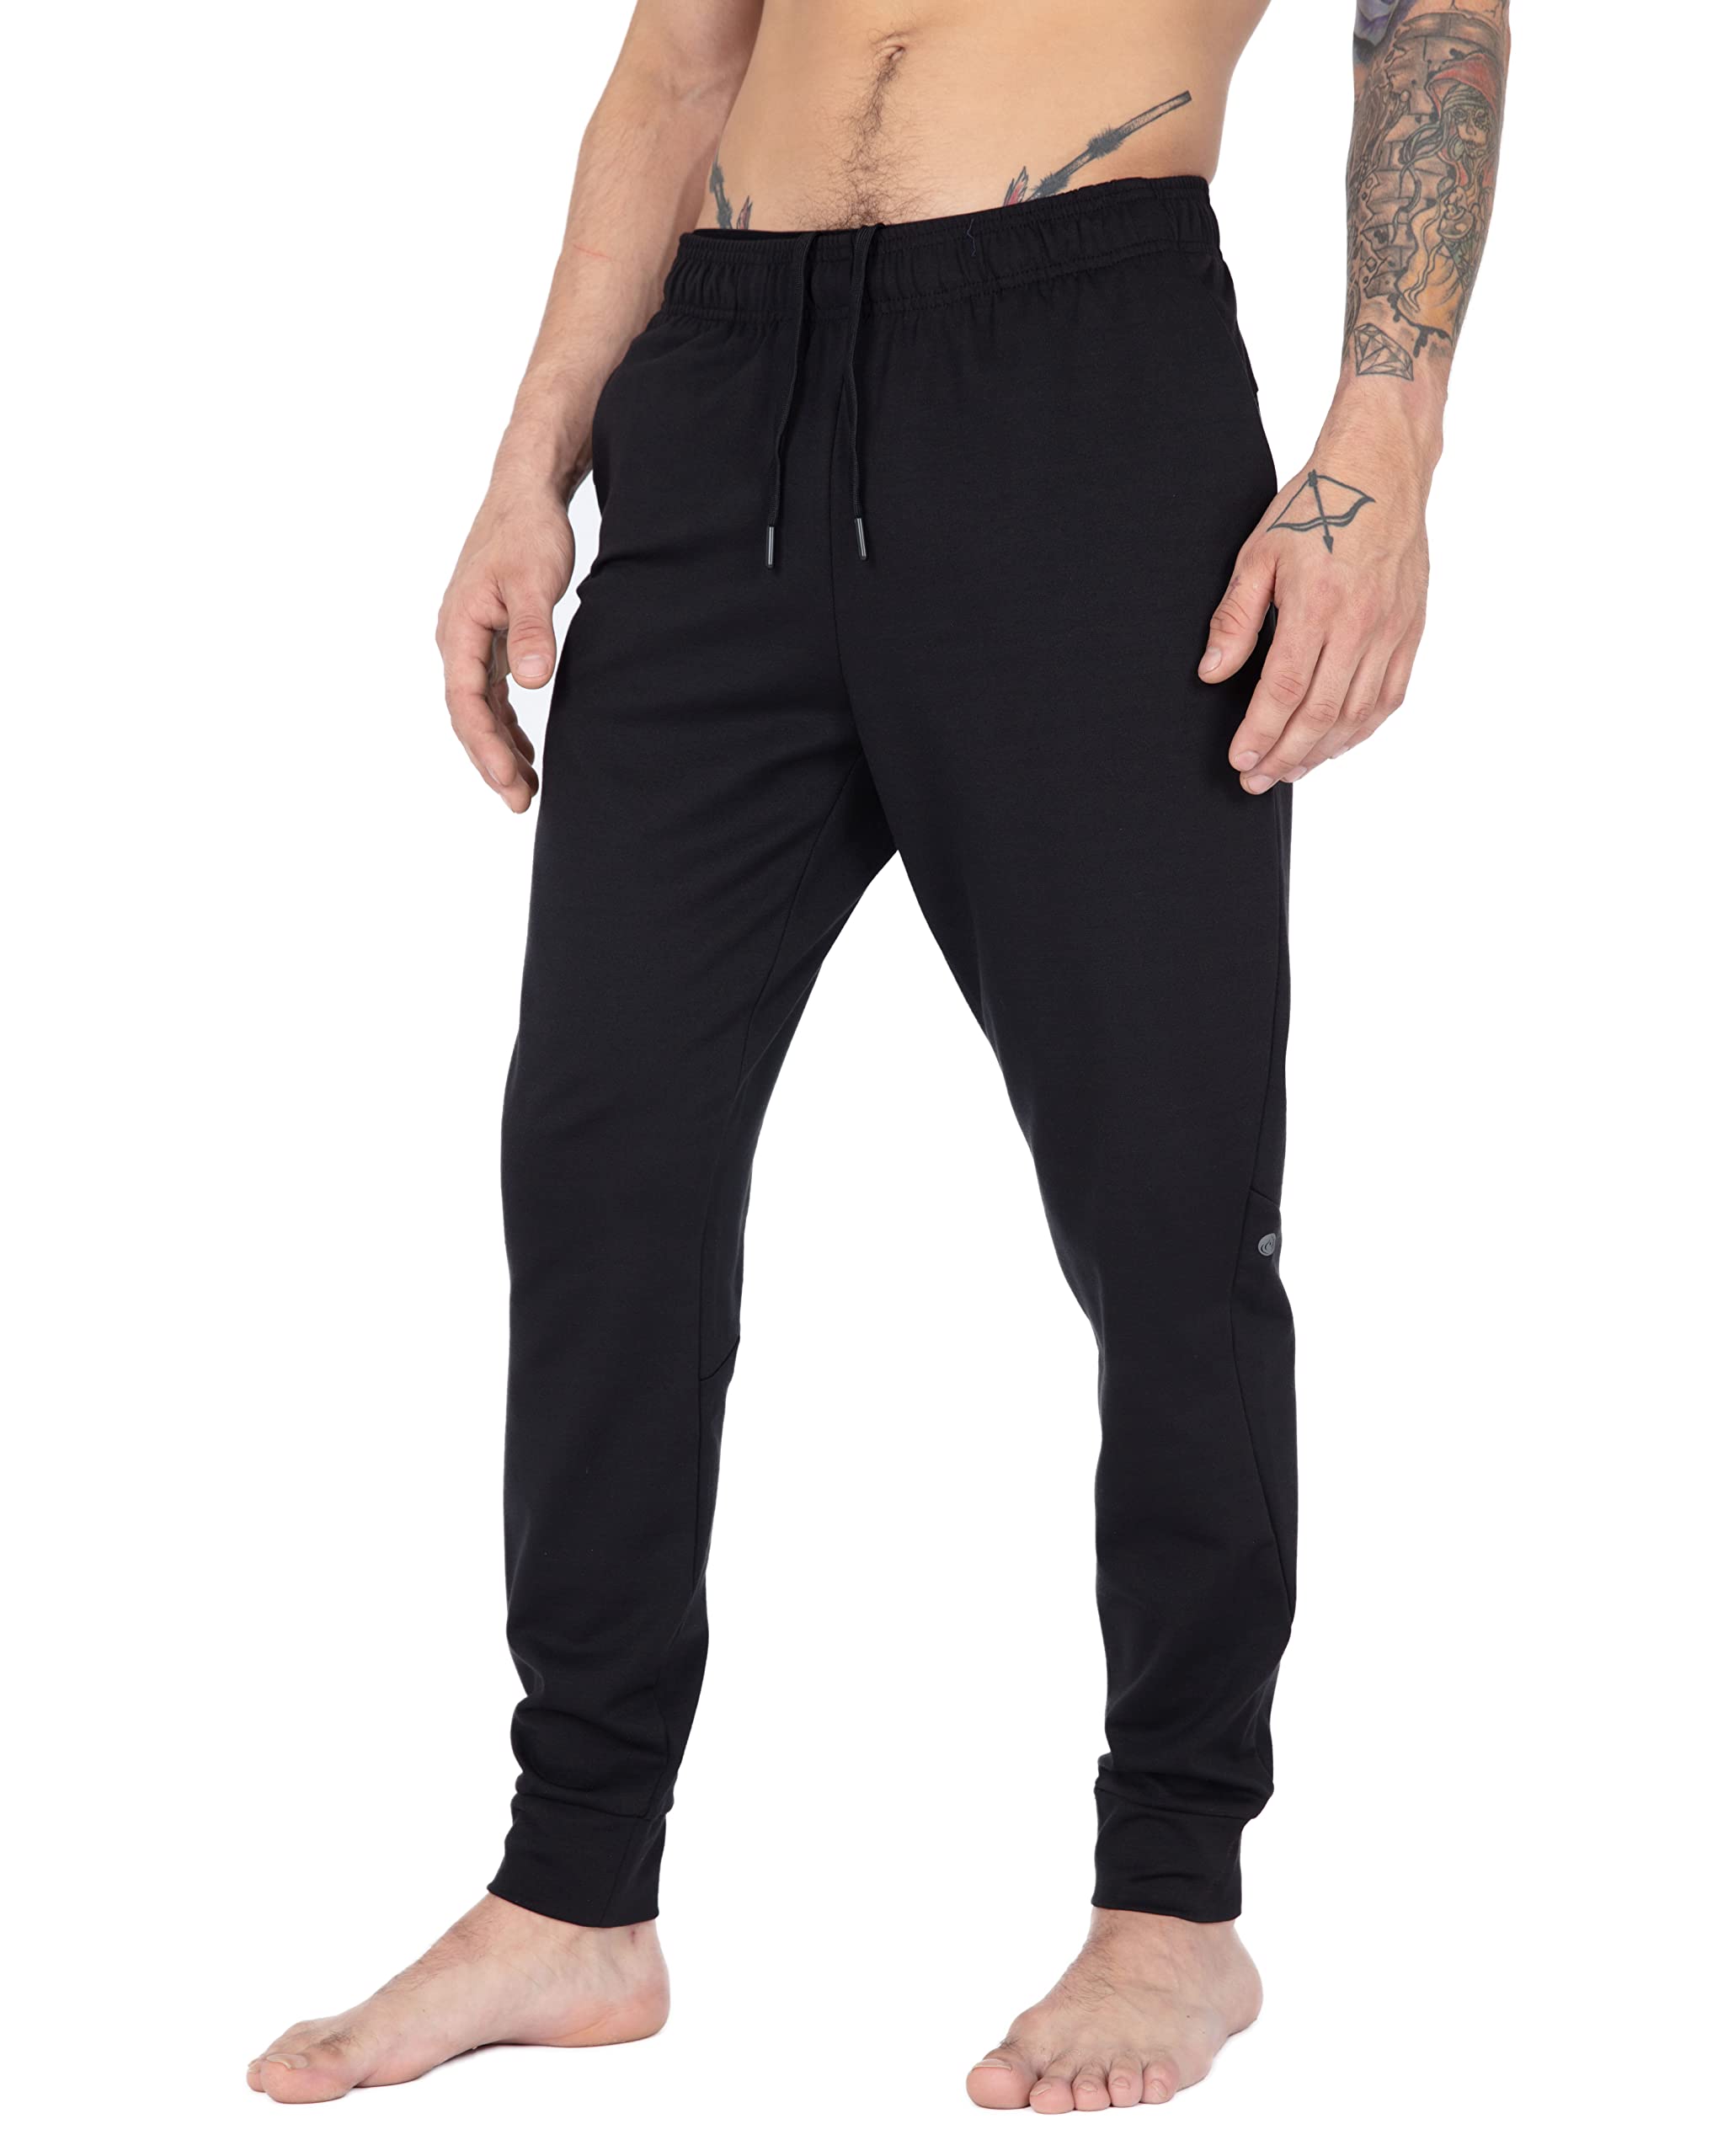 Apana, Pants & Jumpsuits, Apana Black Athletic Yoga Pants Small